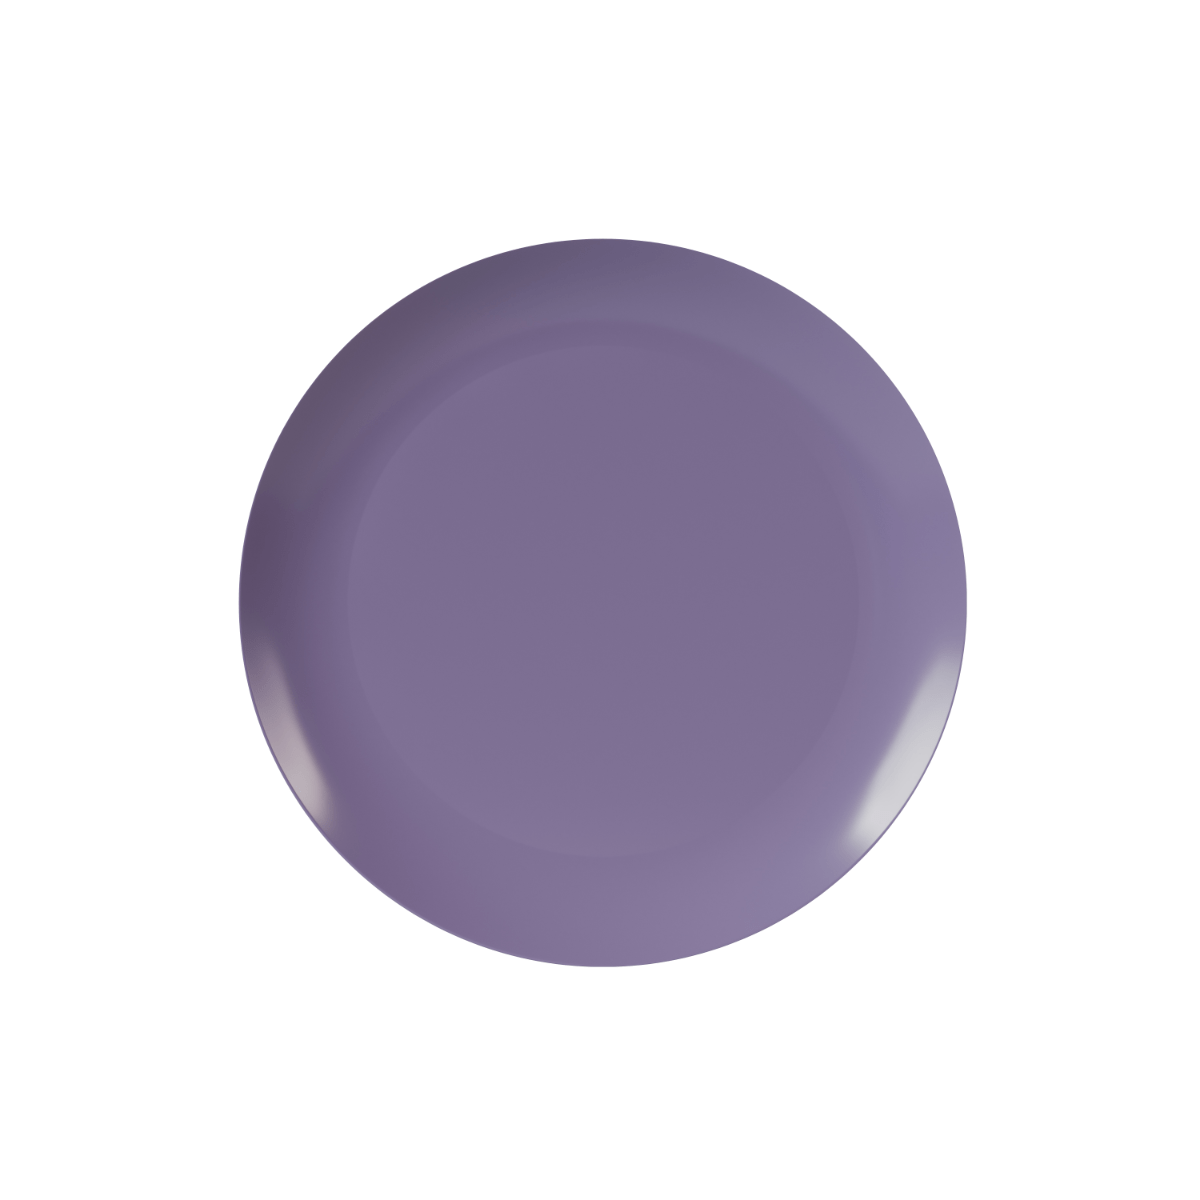 8" Purple Rose Design Plastic Plates (120 Count)